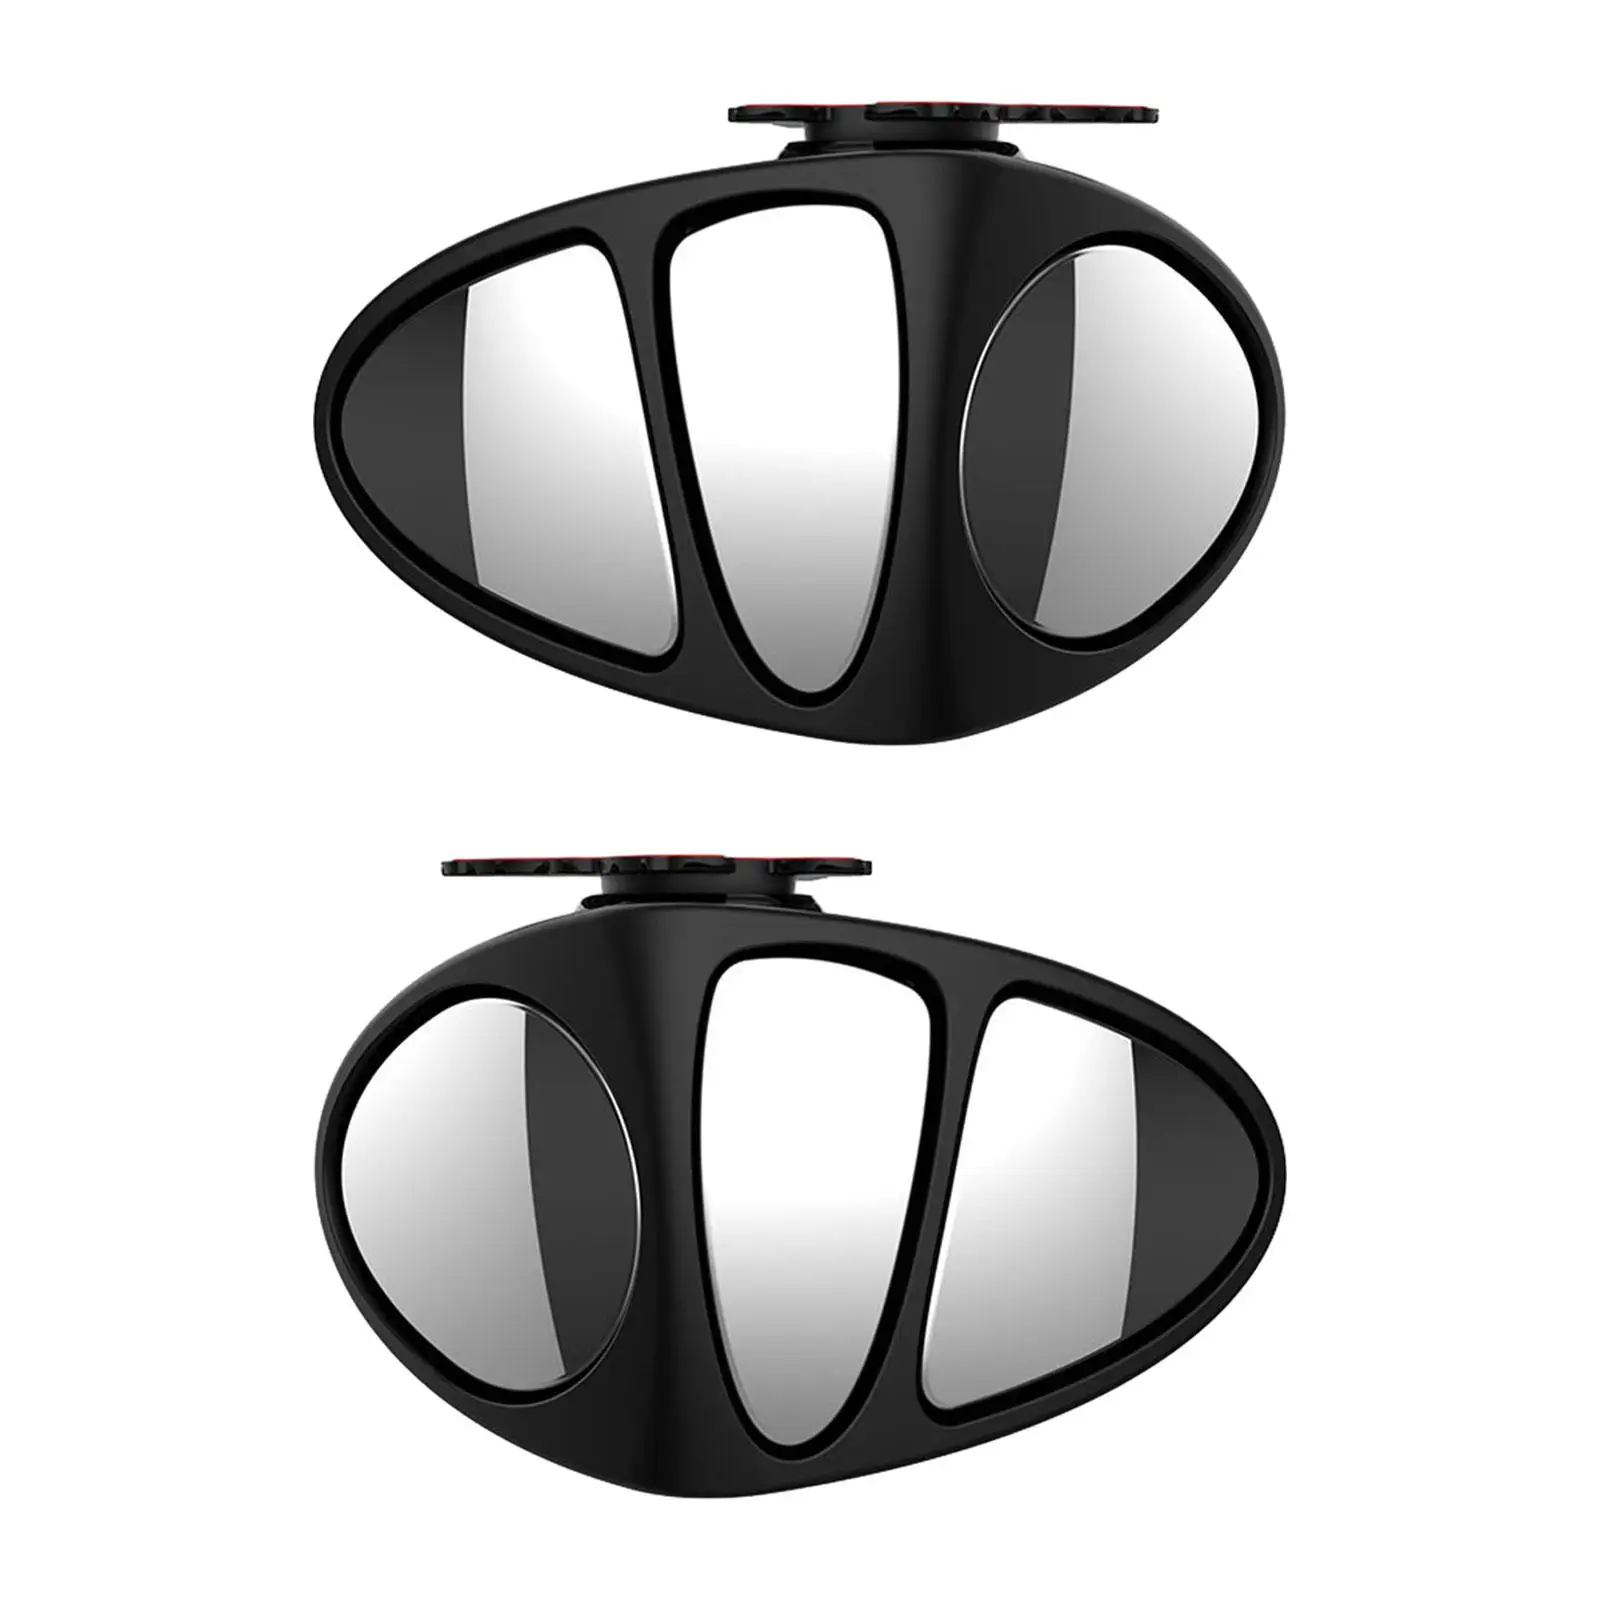 

Универсальное зеркало заднего вида компактное черное практичное легкое в установке водонепроницаемое Автомобильное Зеркало для зеркала заднего вида для автомобиля премиум-класса